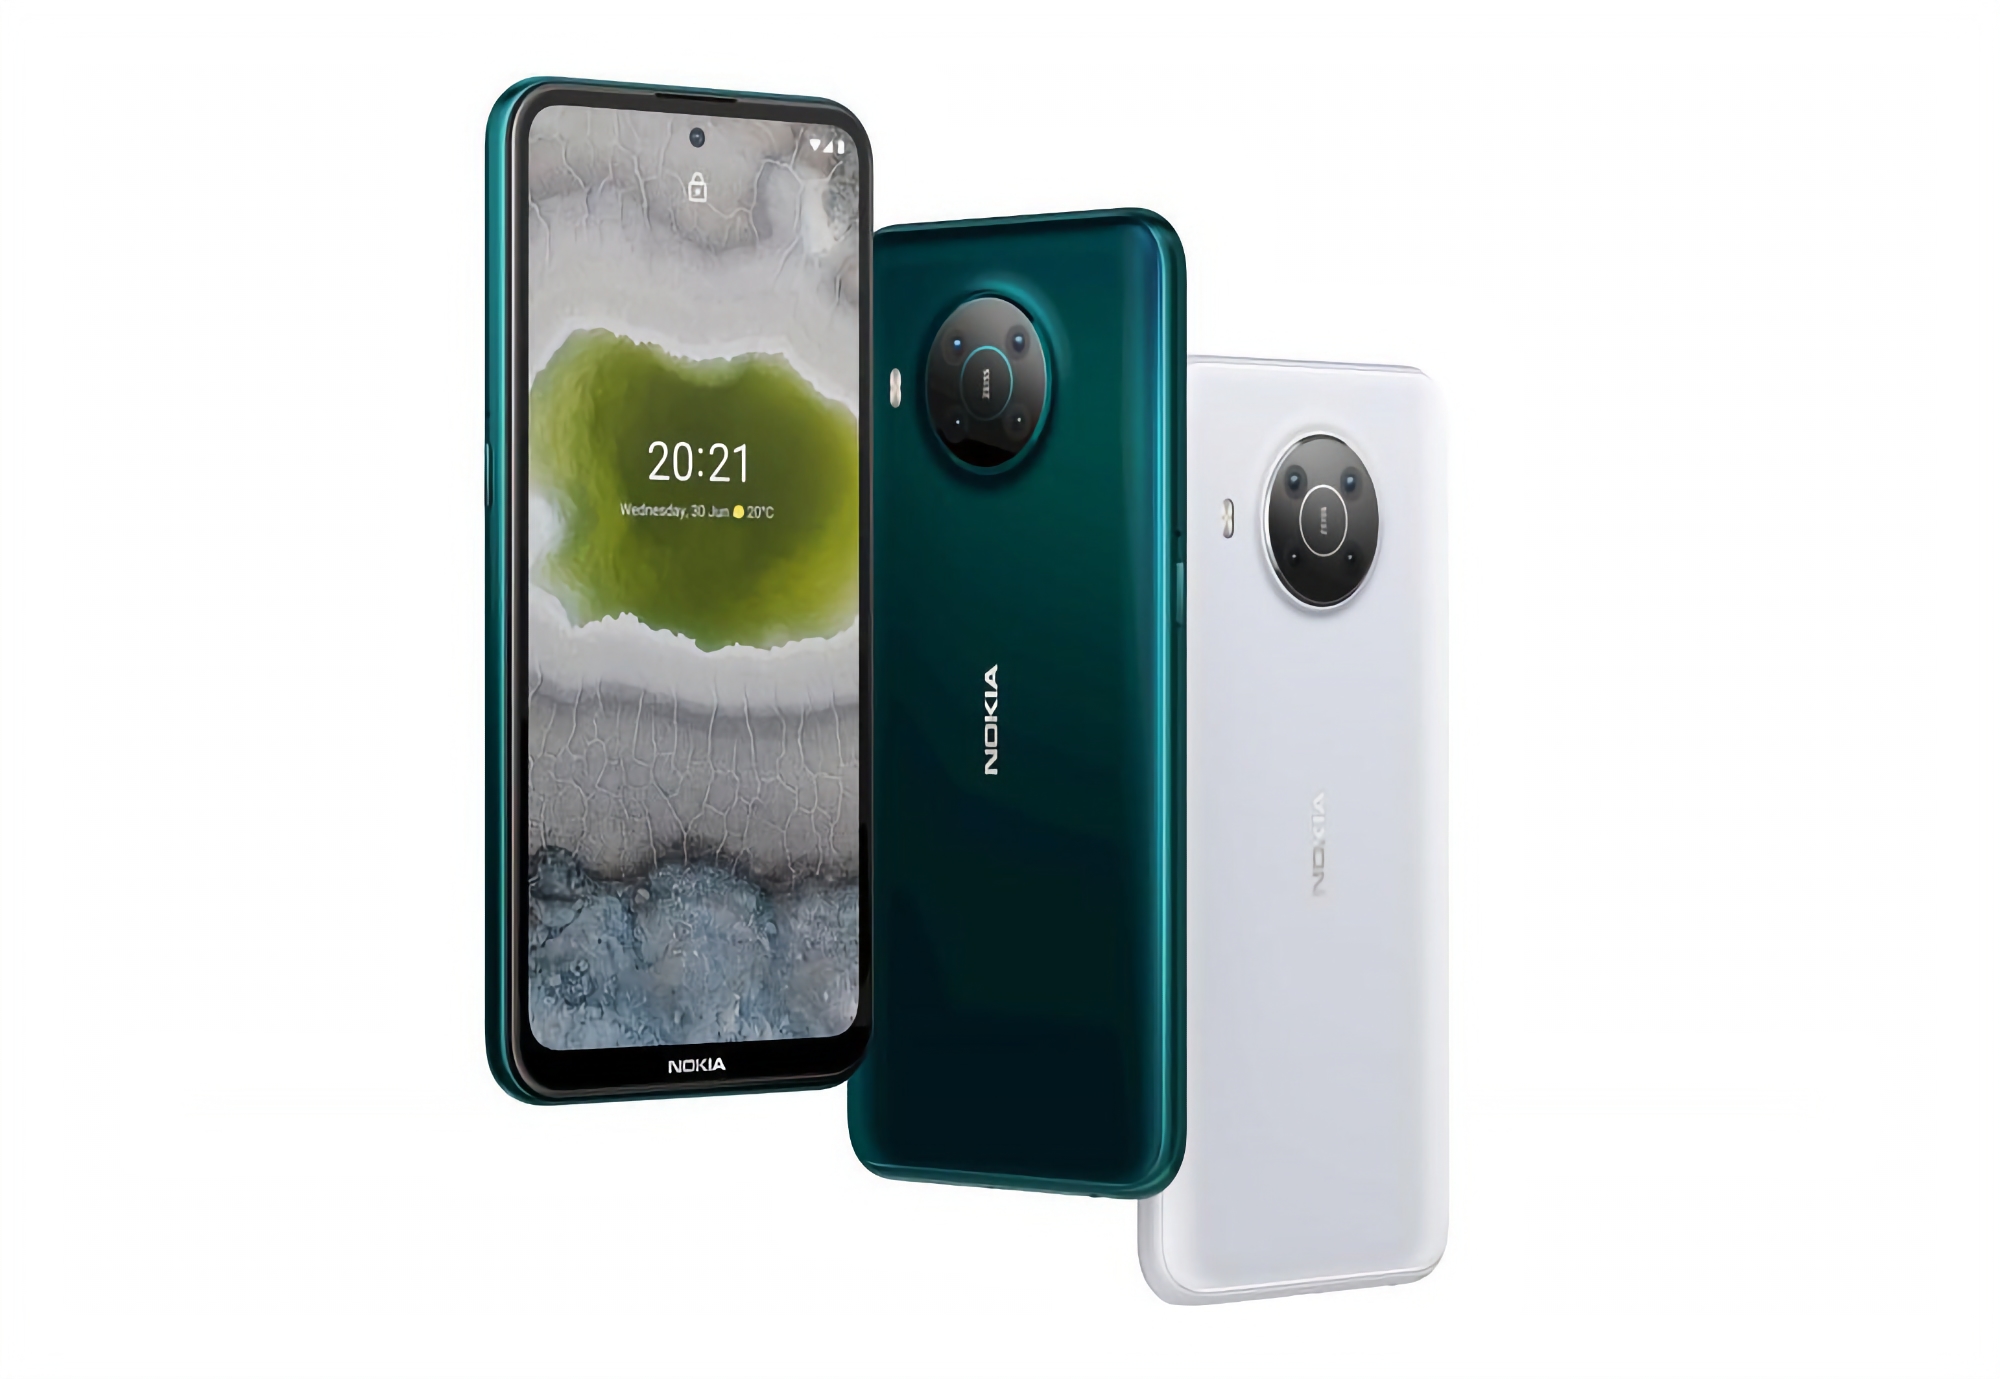 Nokia X10 op Amazon: 5G-ondersteuning, ZEISS-camera en Snapdragon 480-processor voor $40 korting